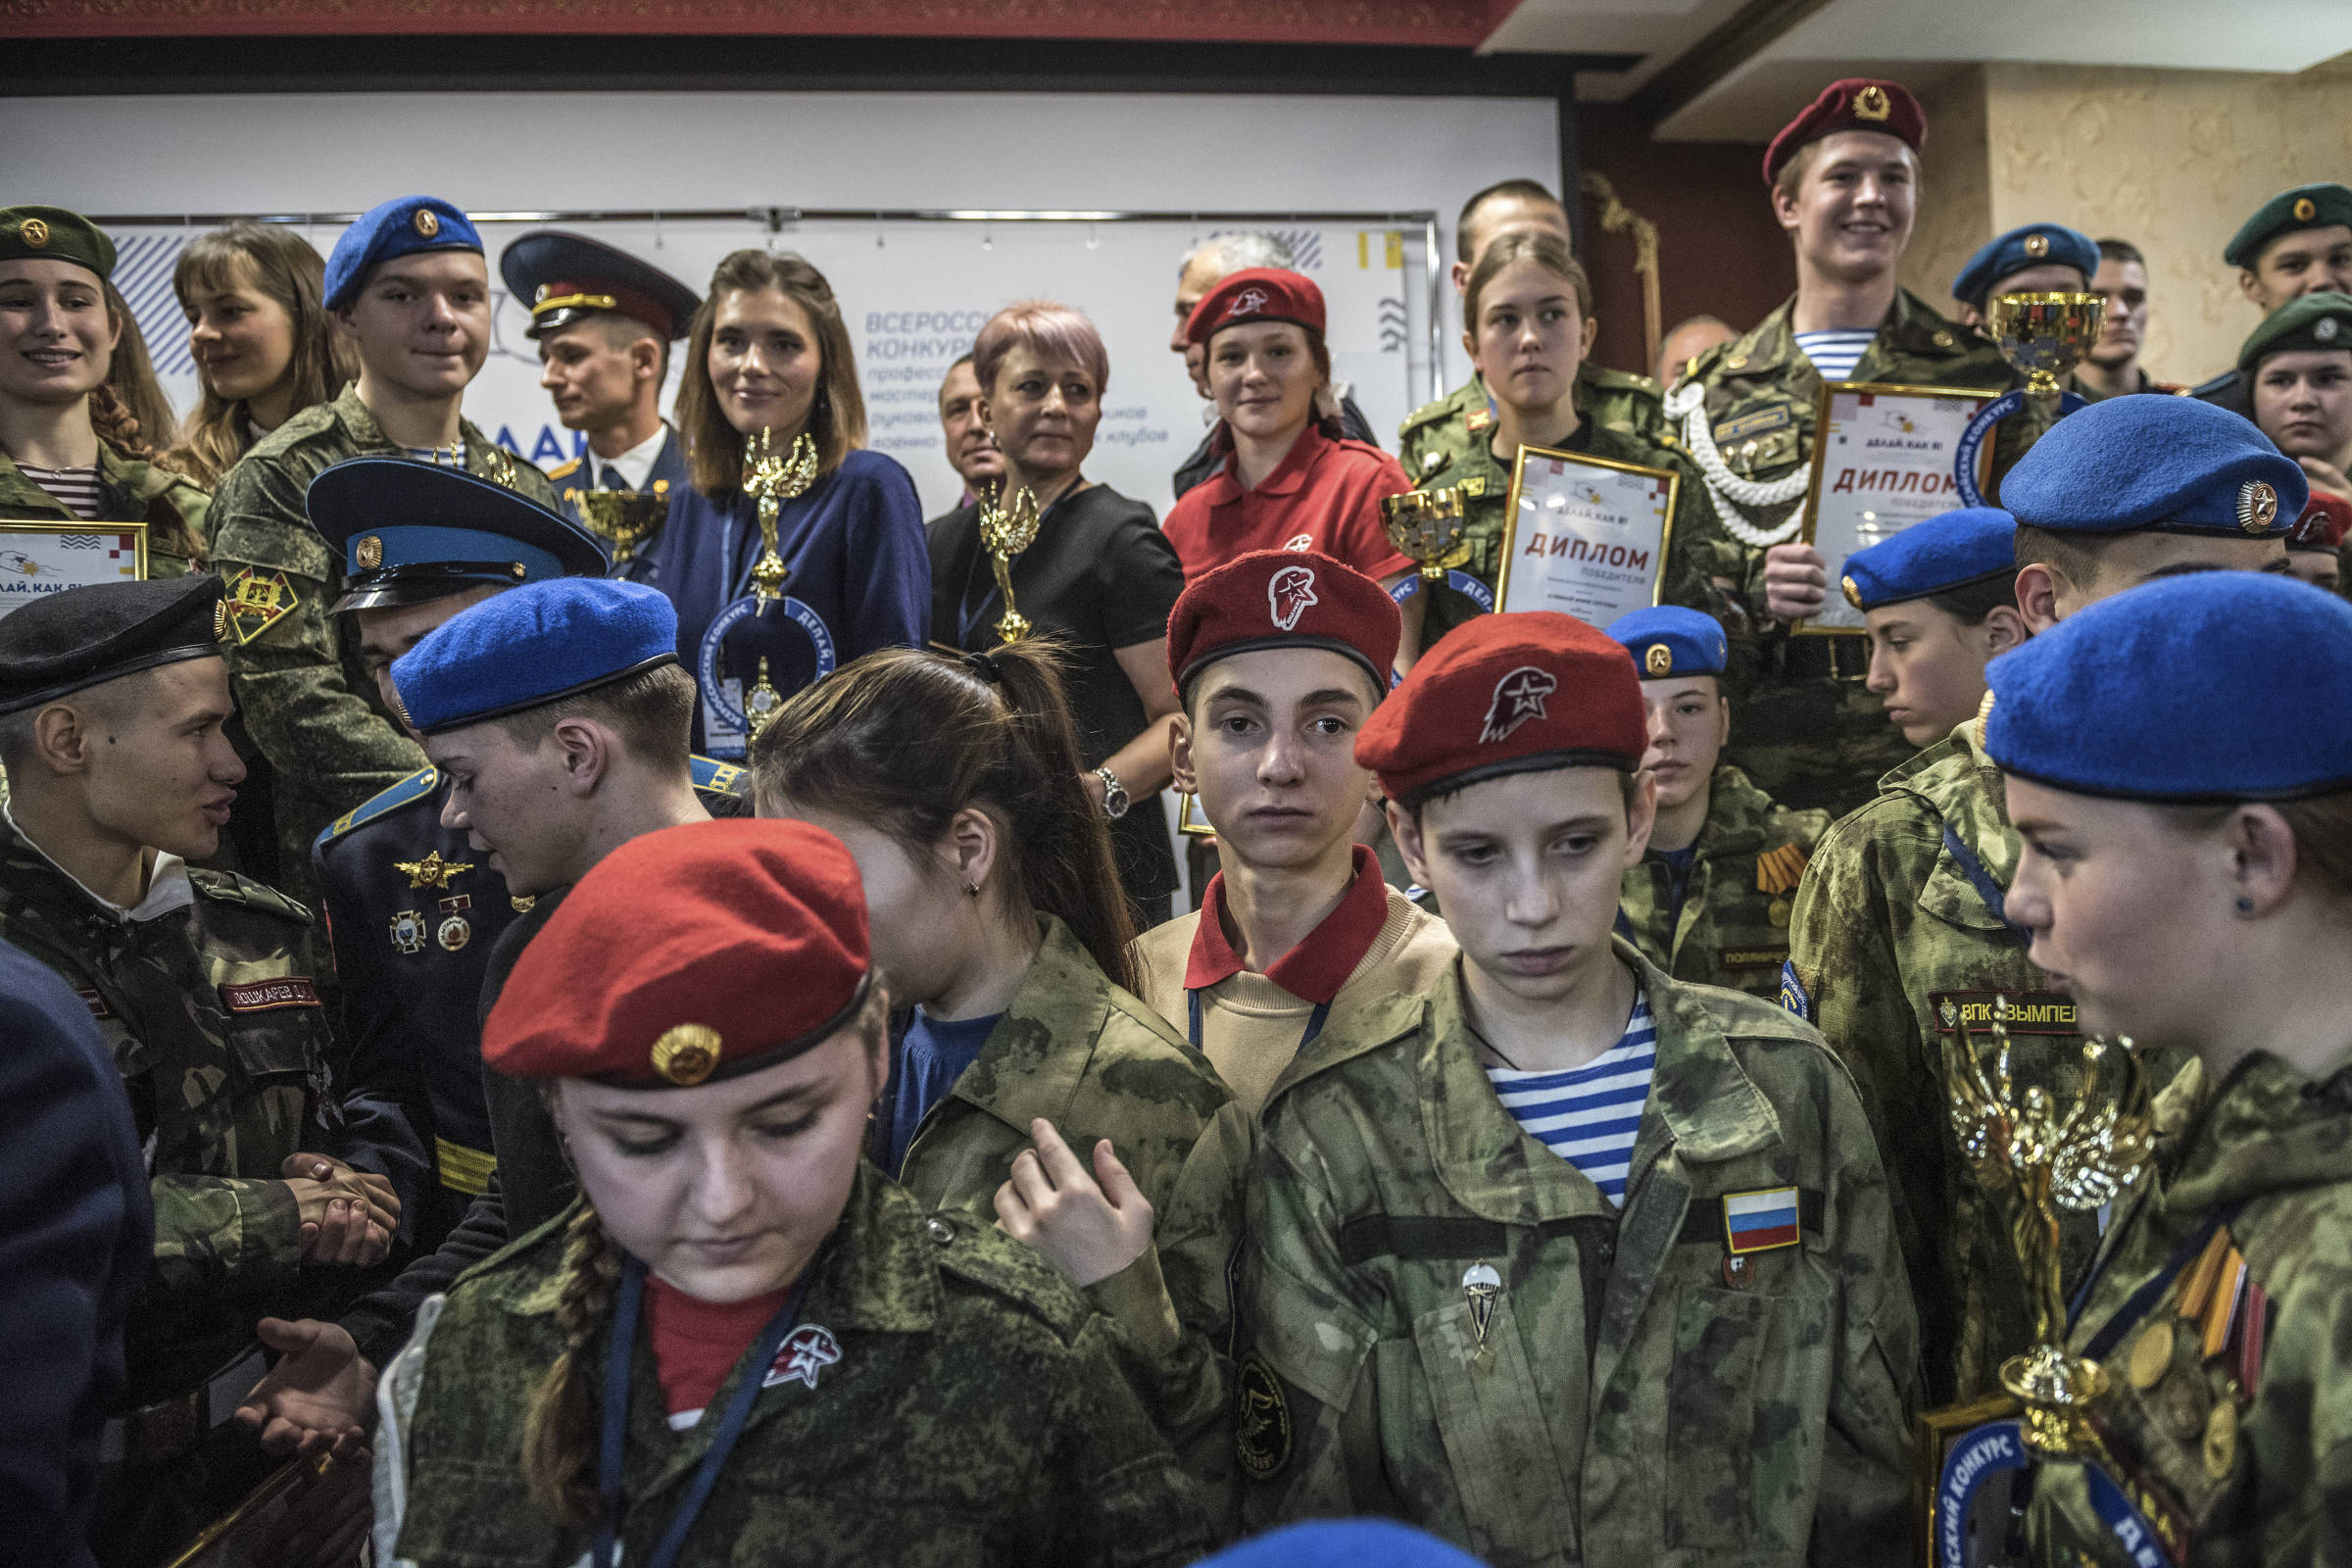 Rusia: Adoctrinamiento doctrinal en las escuelas renueva a los seguidores de Putin – 18/07/2022 – El Mundo